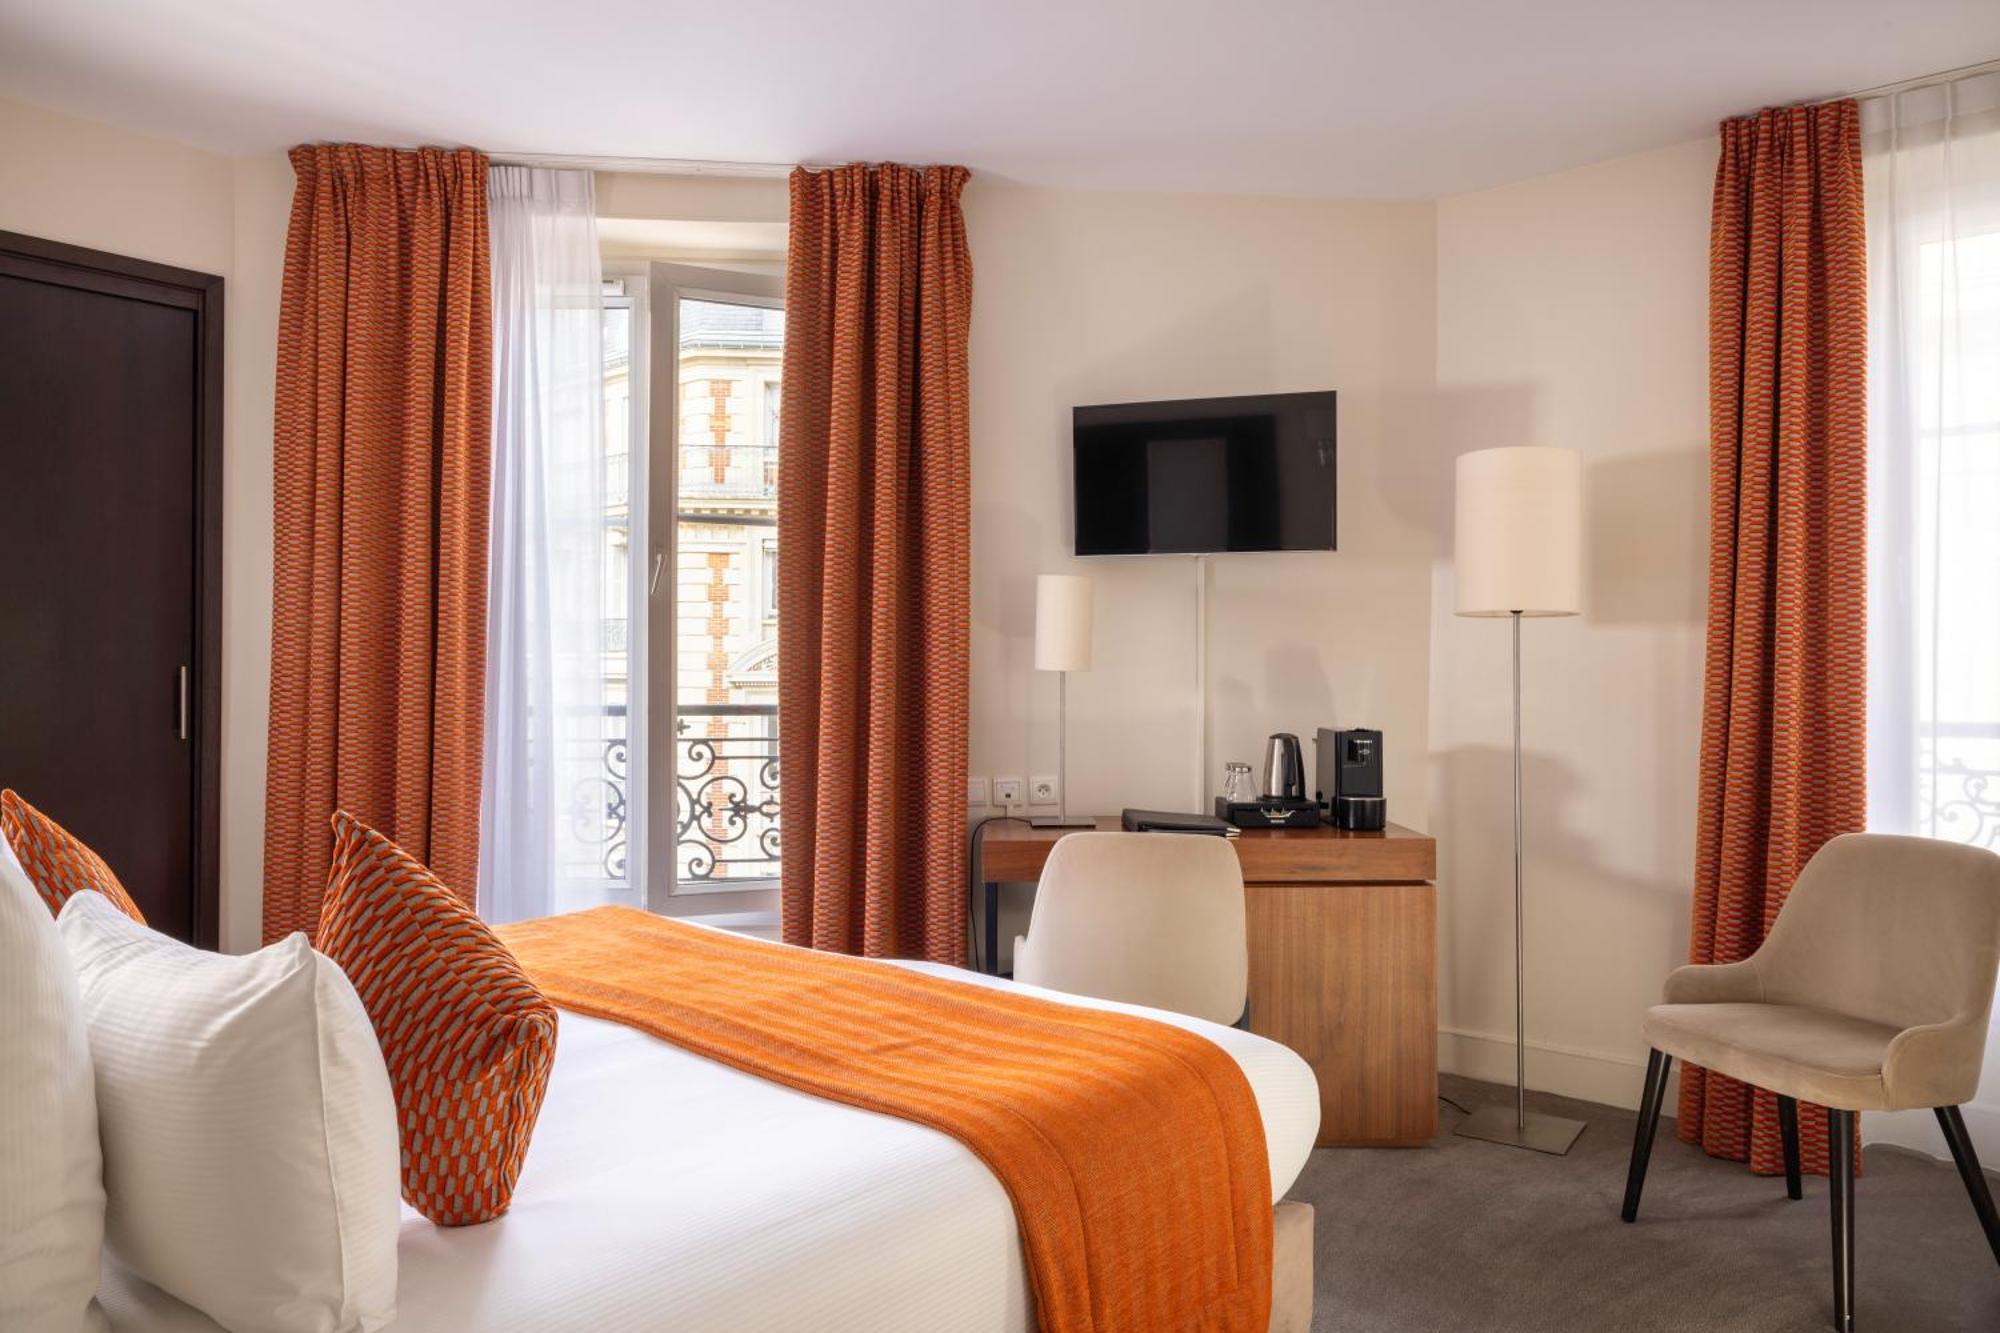 Hotel Elysees Bassano Париж Екстериор снимка